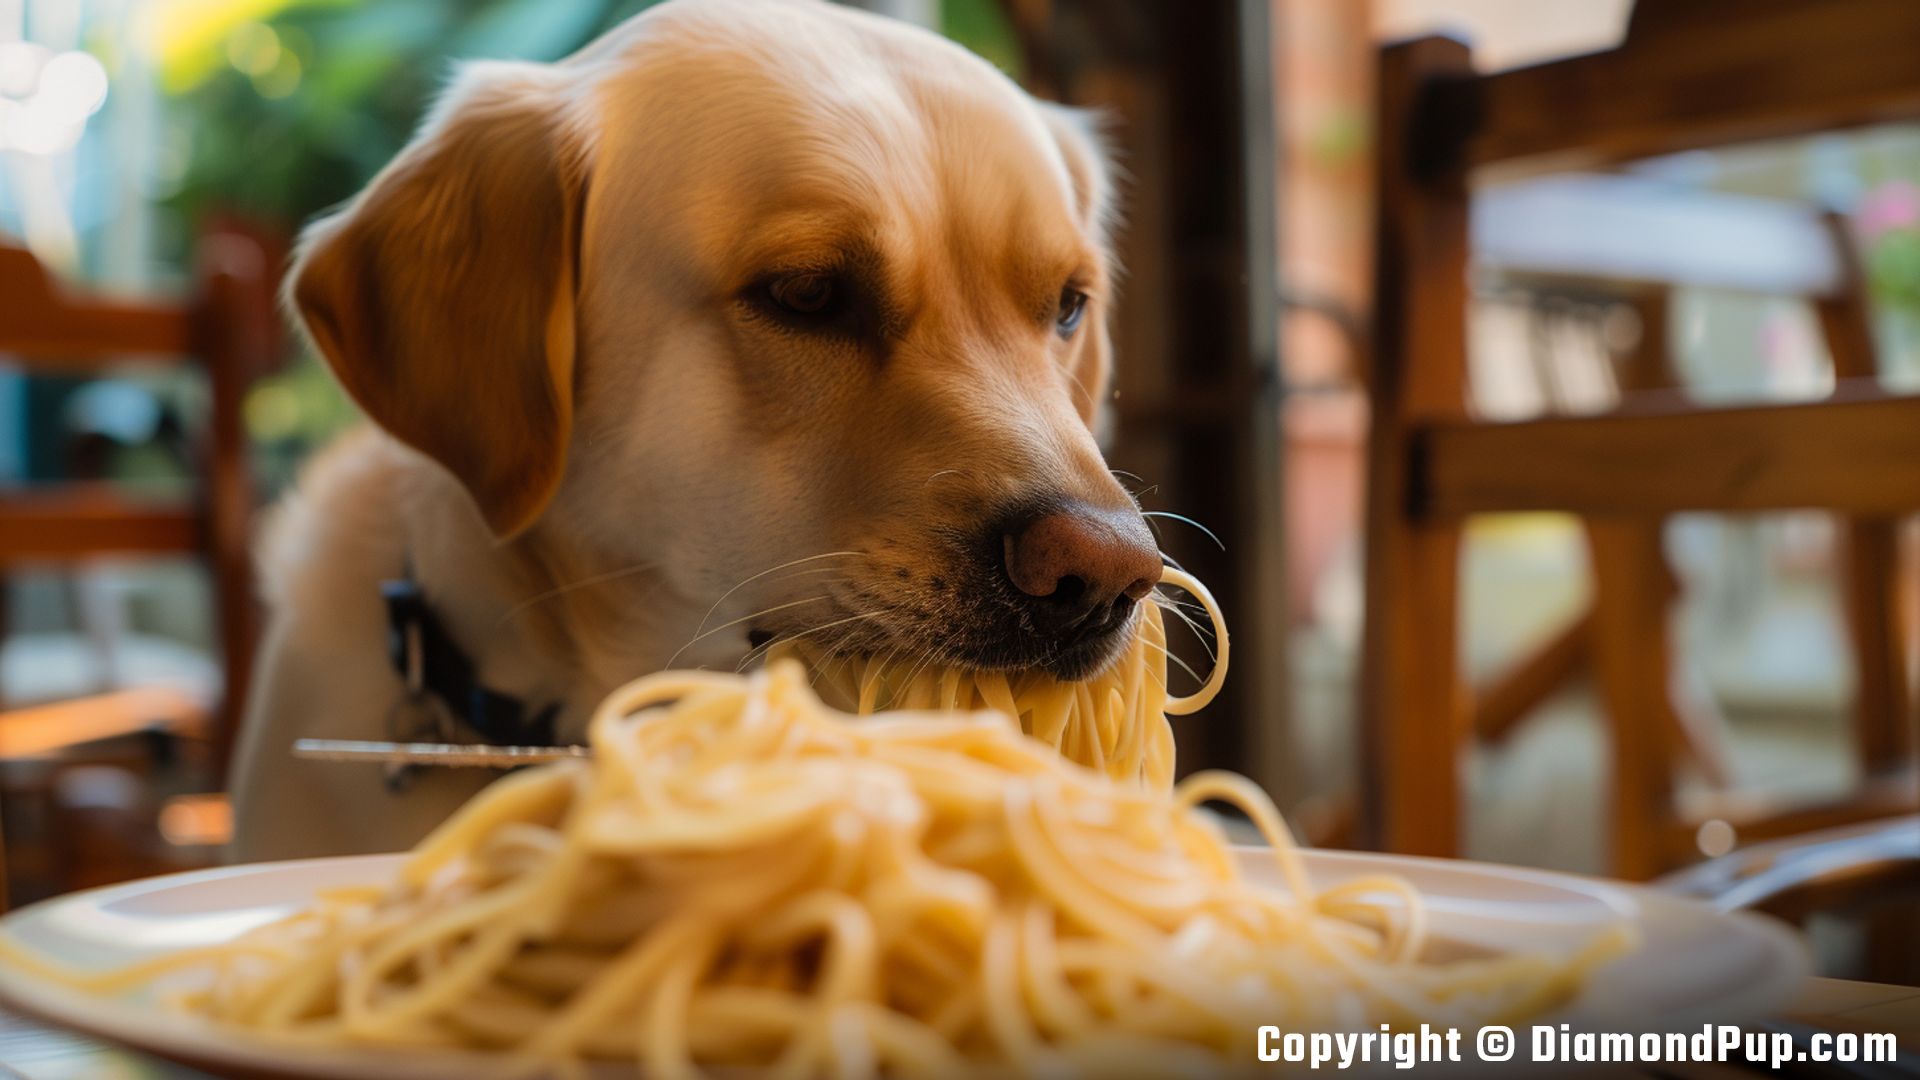 Photograph of a Cute Labrador Eating Pasta